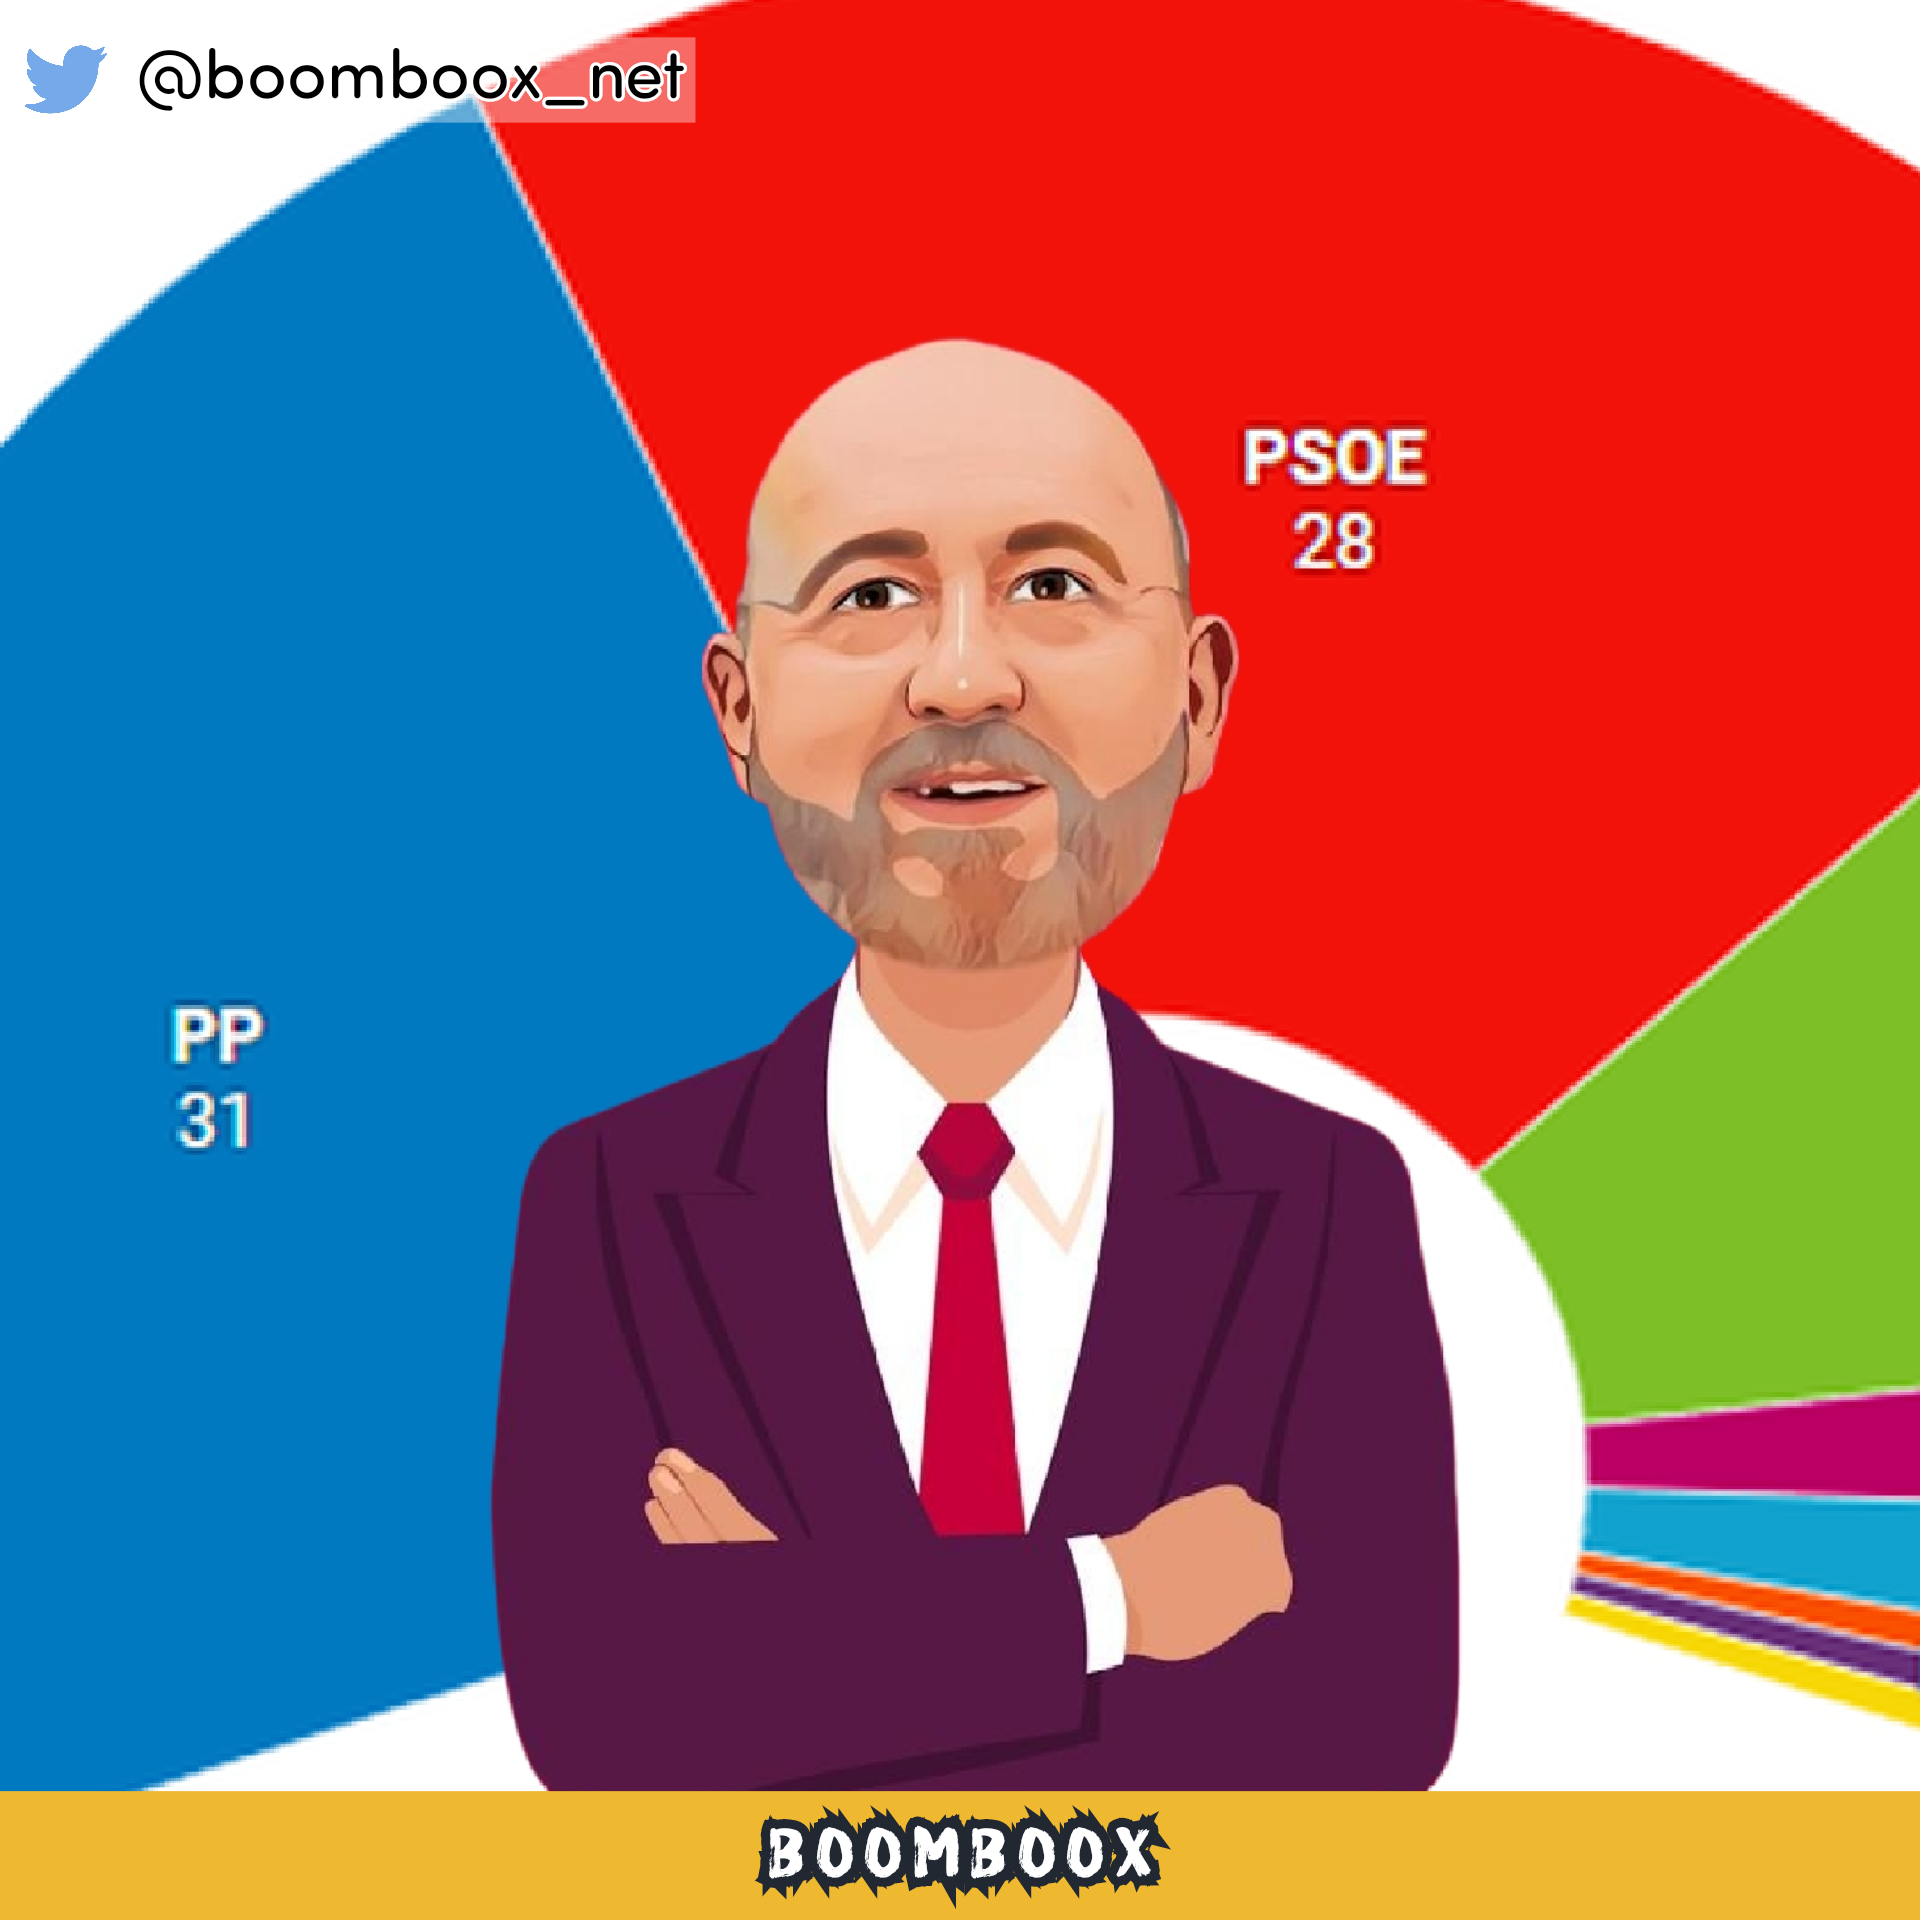 El CIS de Tezanos deja la mayoría absoluta del PP en serio riesgo y hunde al PSOE a favor del BNG – Periodistas BOOMBOOX